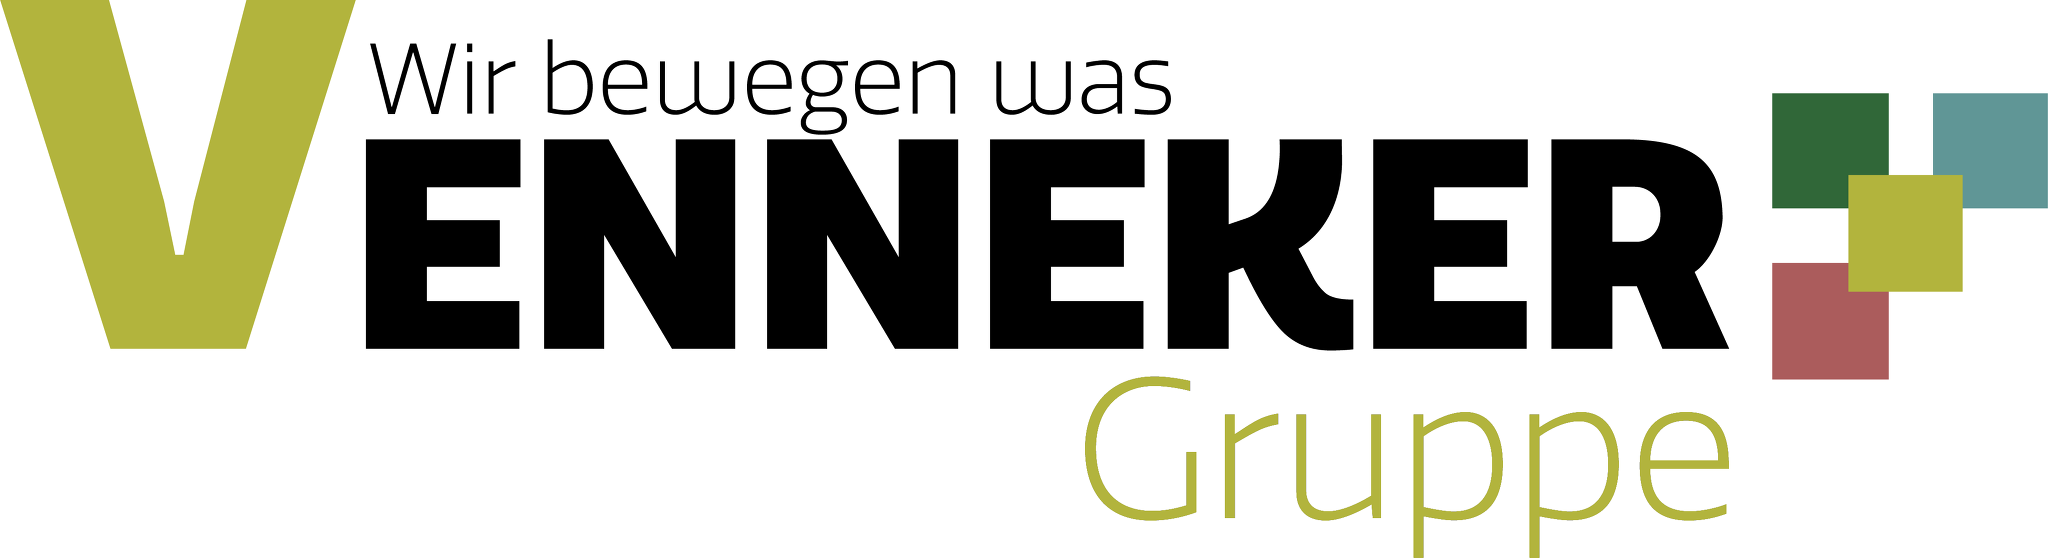 Logo   Venneker Gruppe